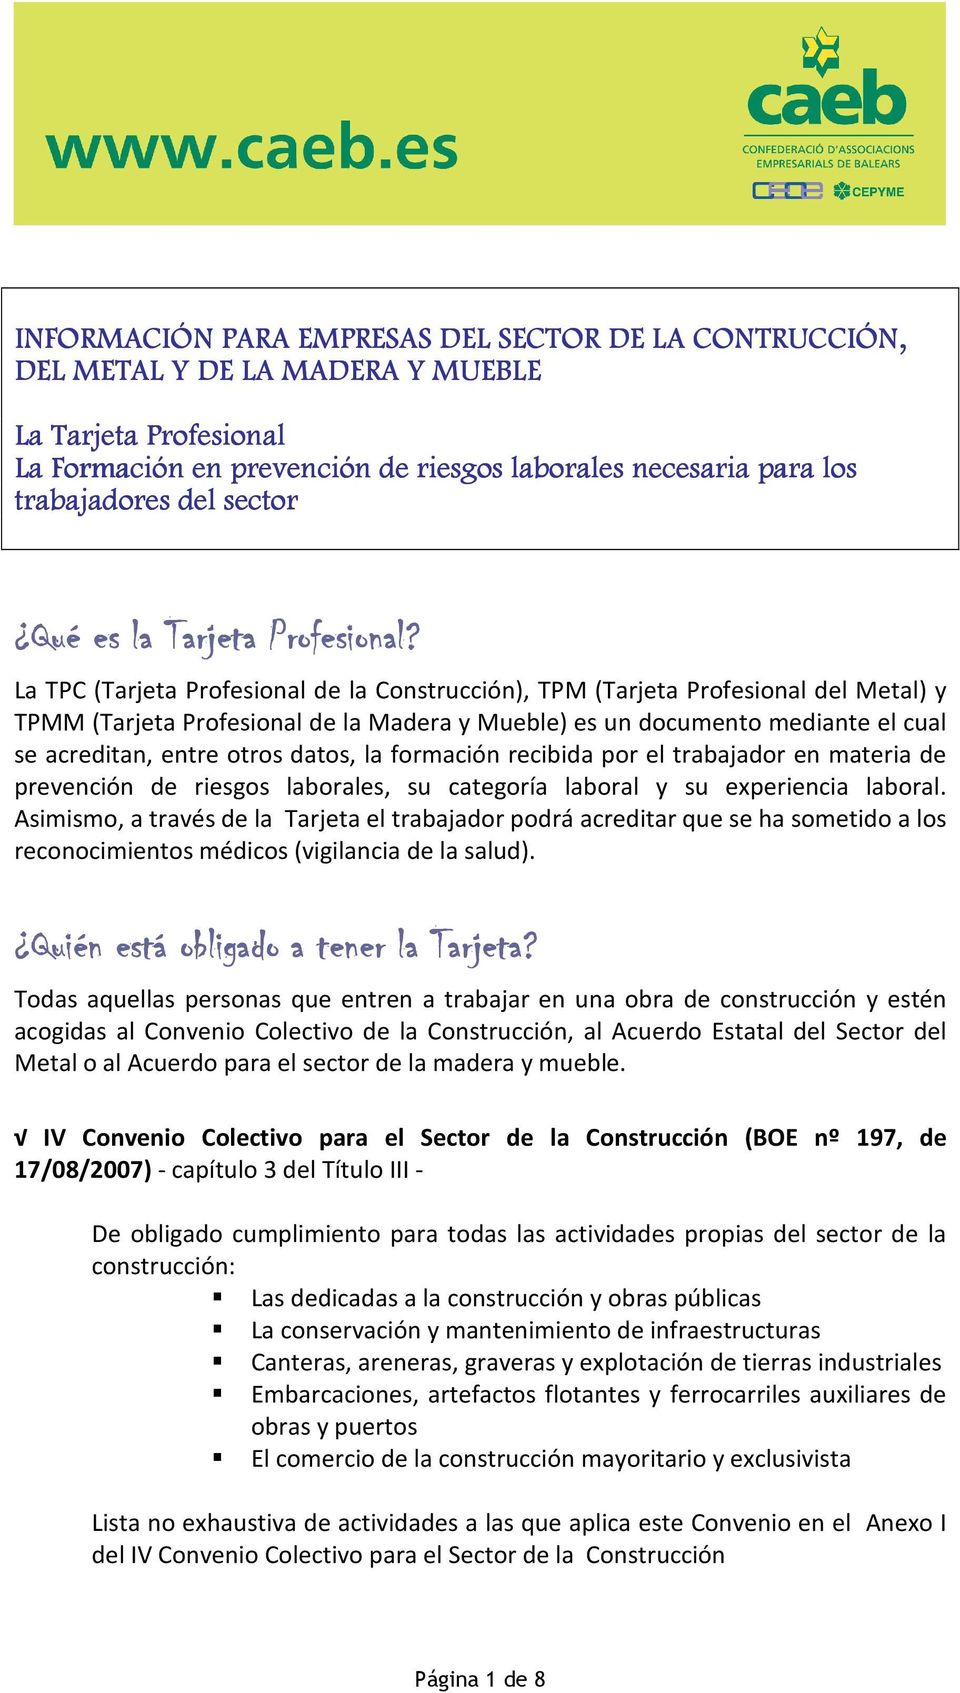 La TPC (Tarjeta Profesional de la Construcción), TPM (Tarjeta Profesional del Metal) y TPMM (Tarjeta Profesional de la Madera y Mueble) es un documento mediante el cual se acreditan, entre otros